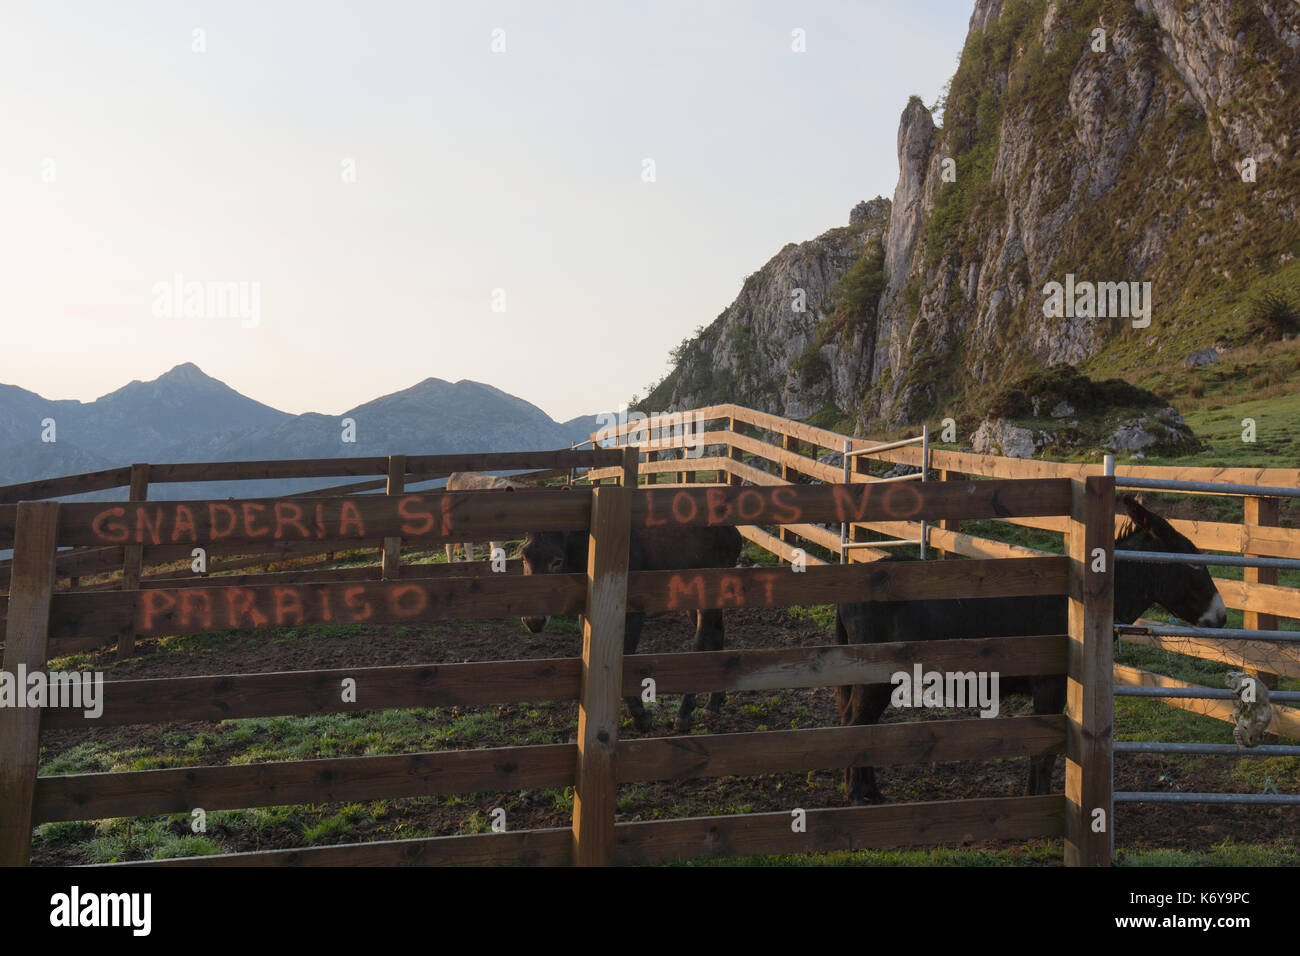 Segno di protesta dipinta sulla recinzione di legno contro lupi nel Parco Nazionale di Picos de Europa. Ganadería si, lobos n. Foto Stock